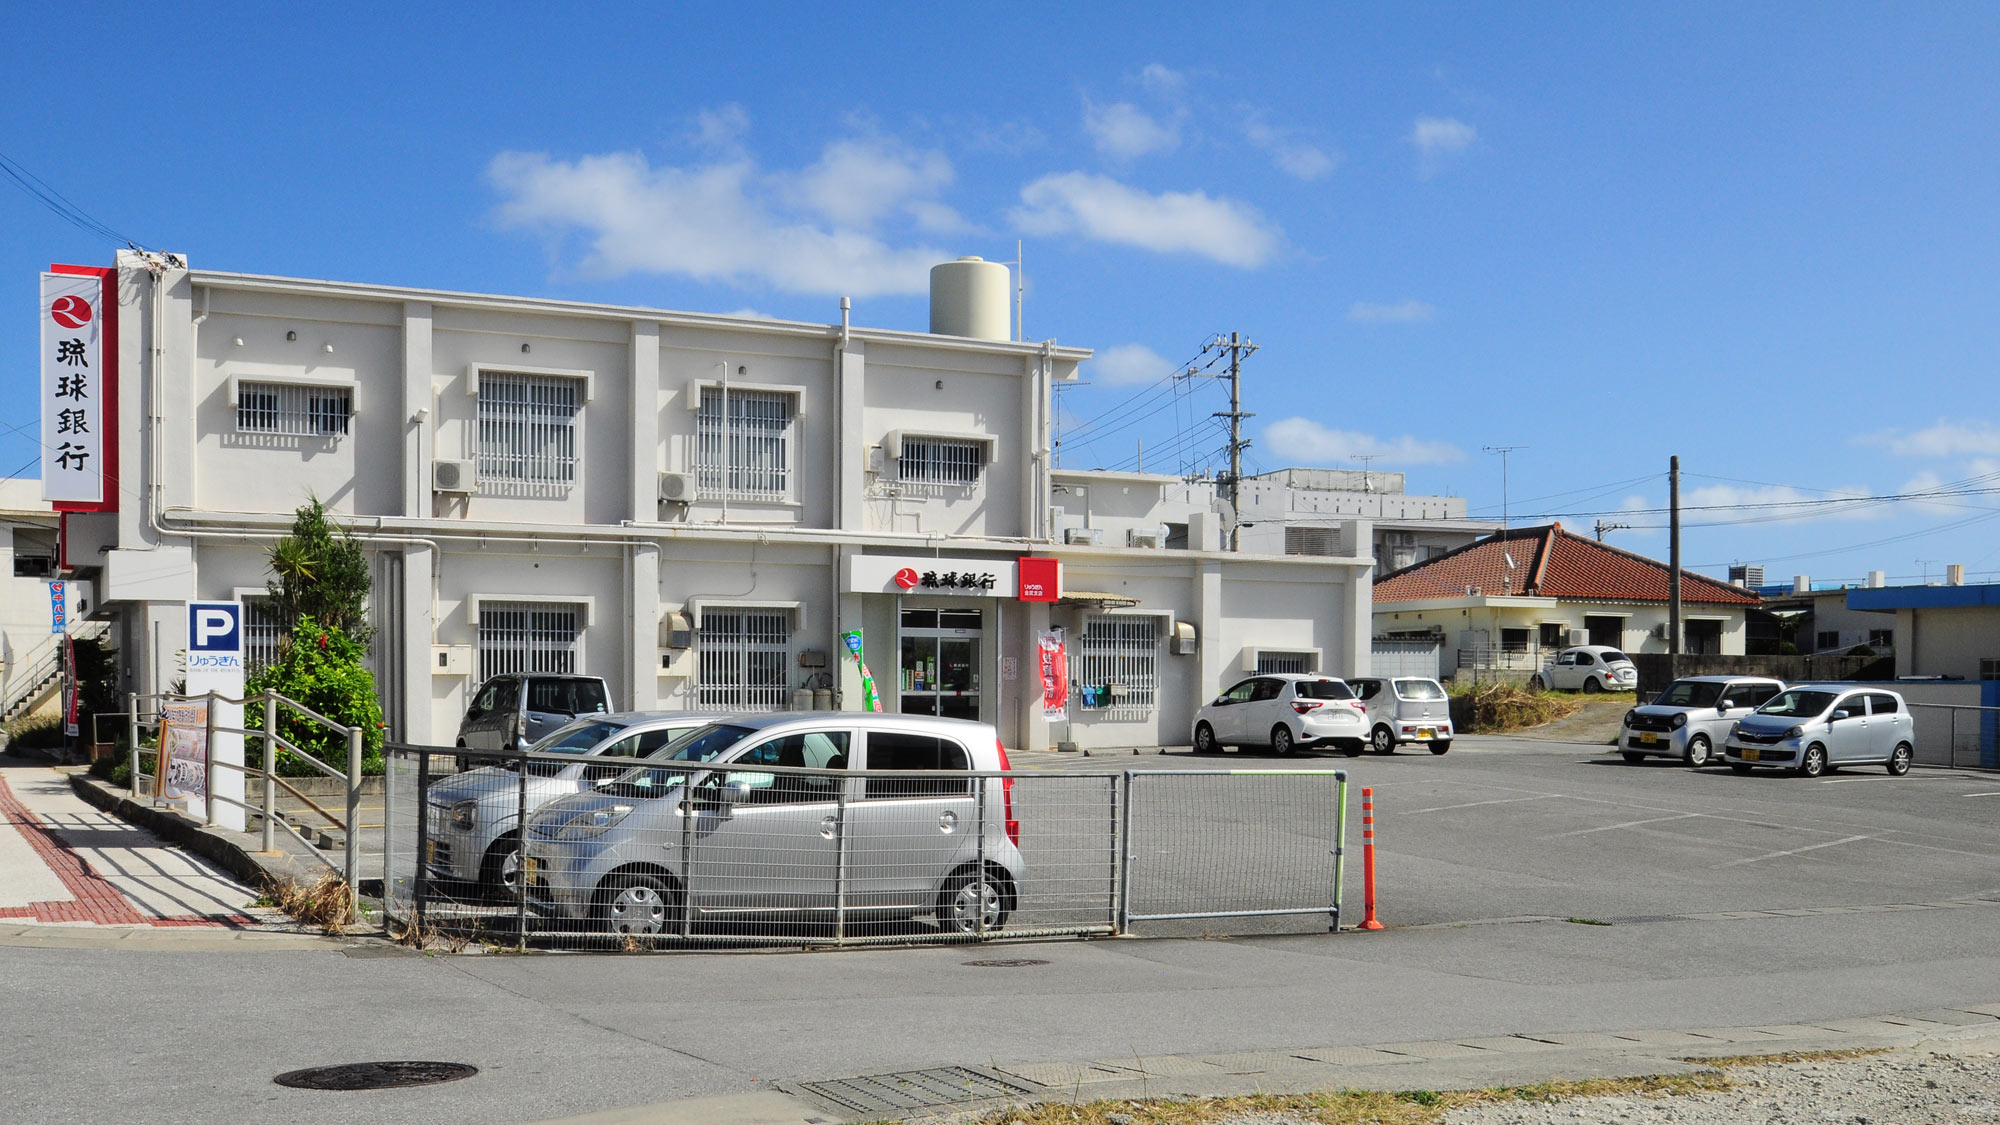 【駐車場】琉球銀行の駐車場を共有で利用できます